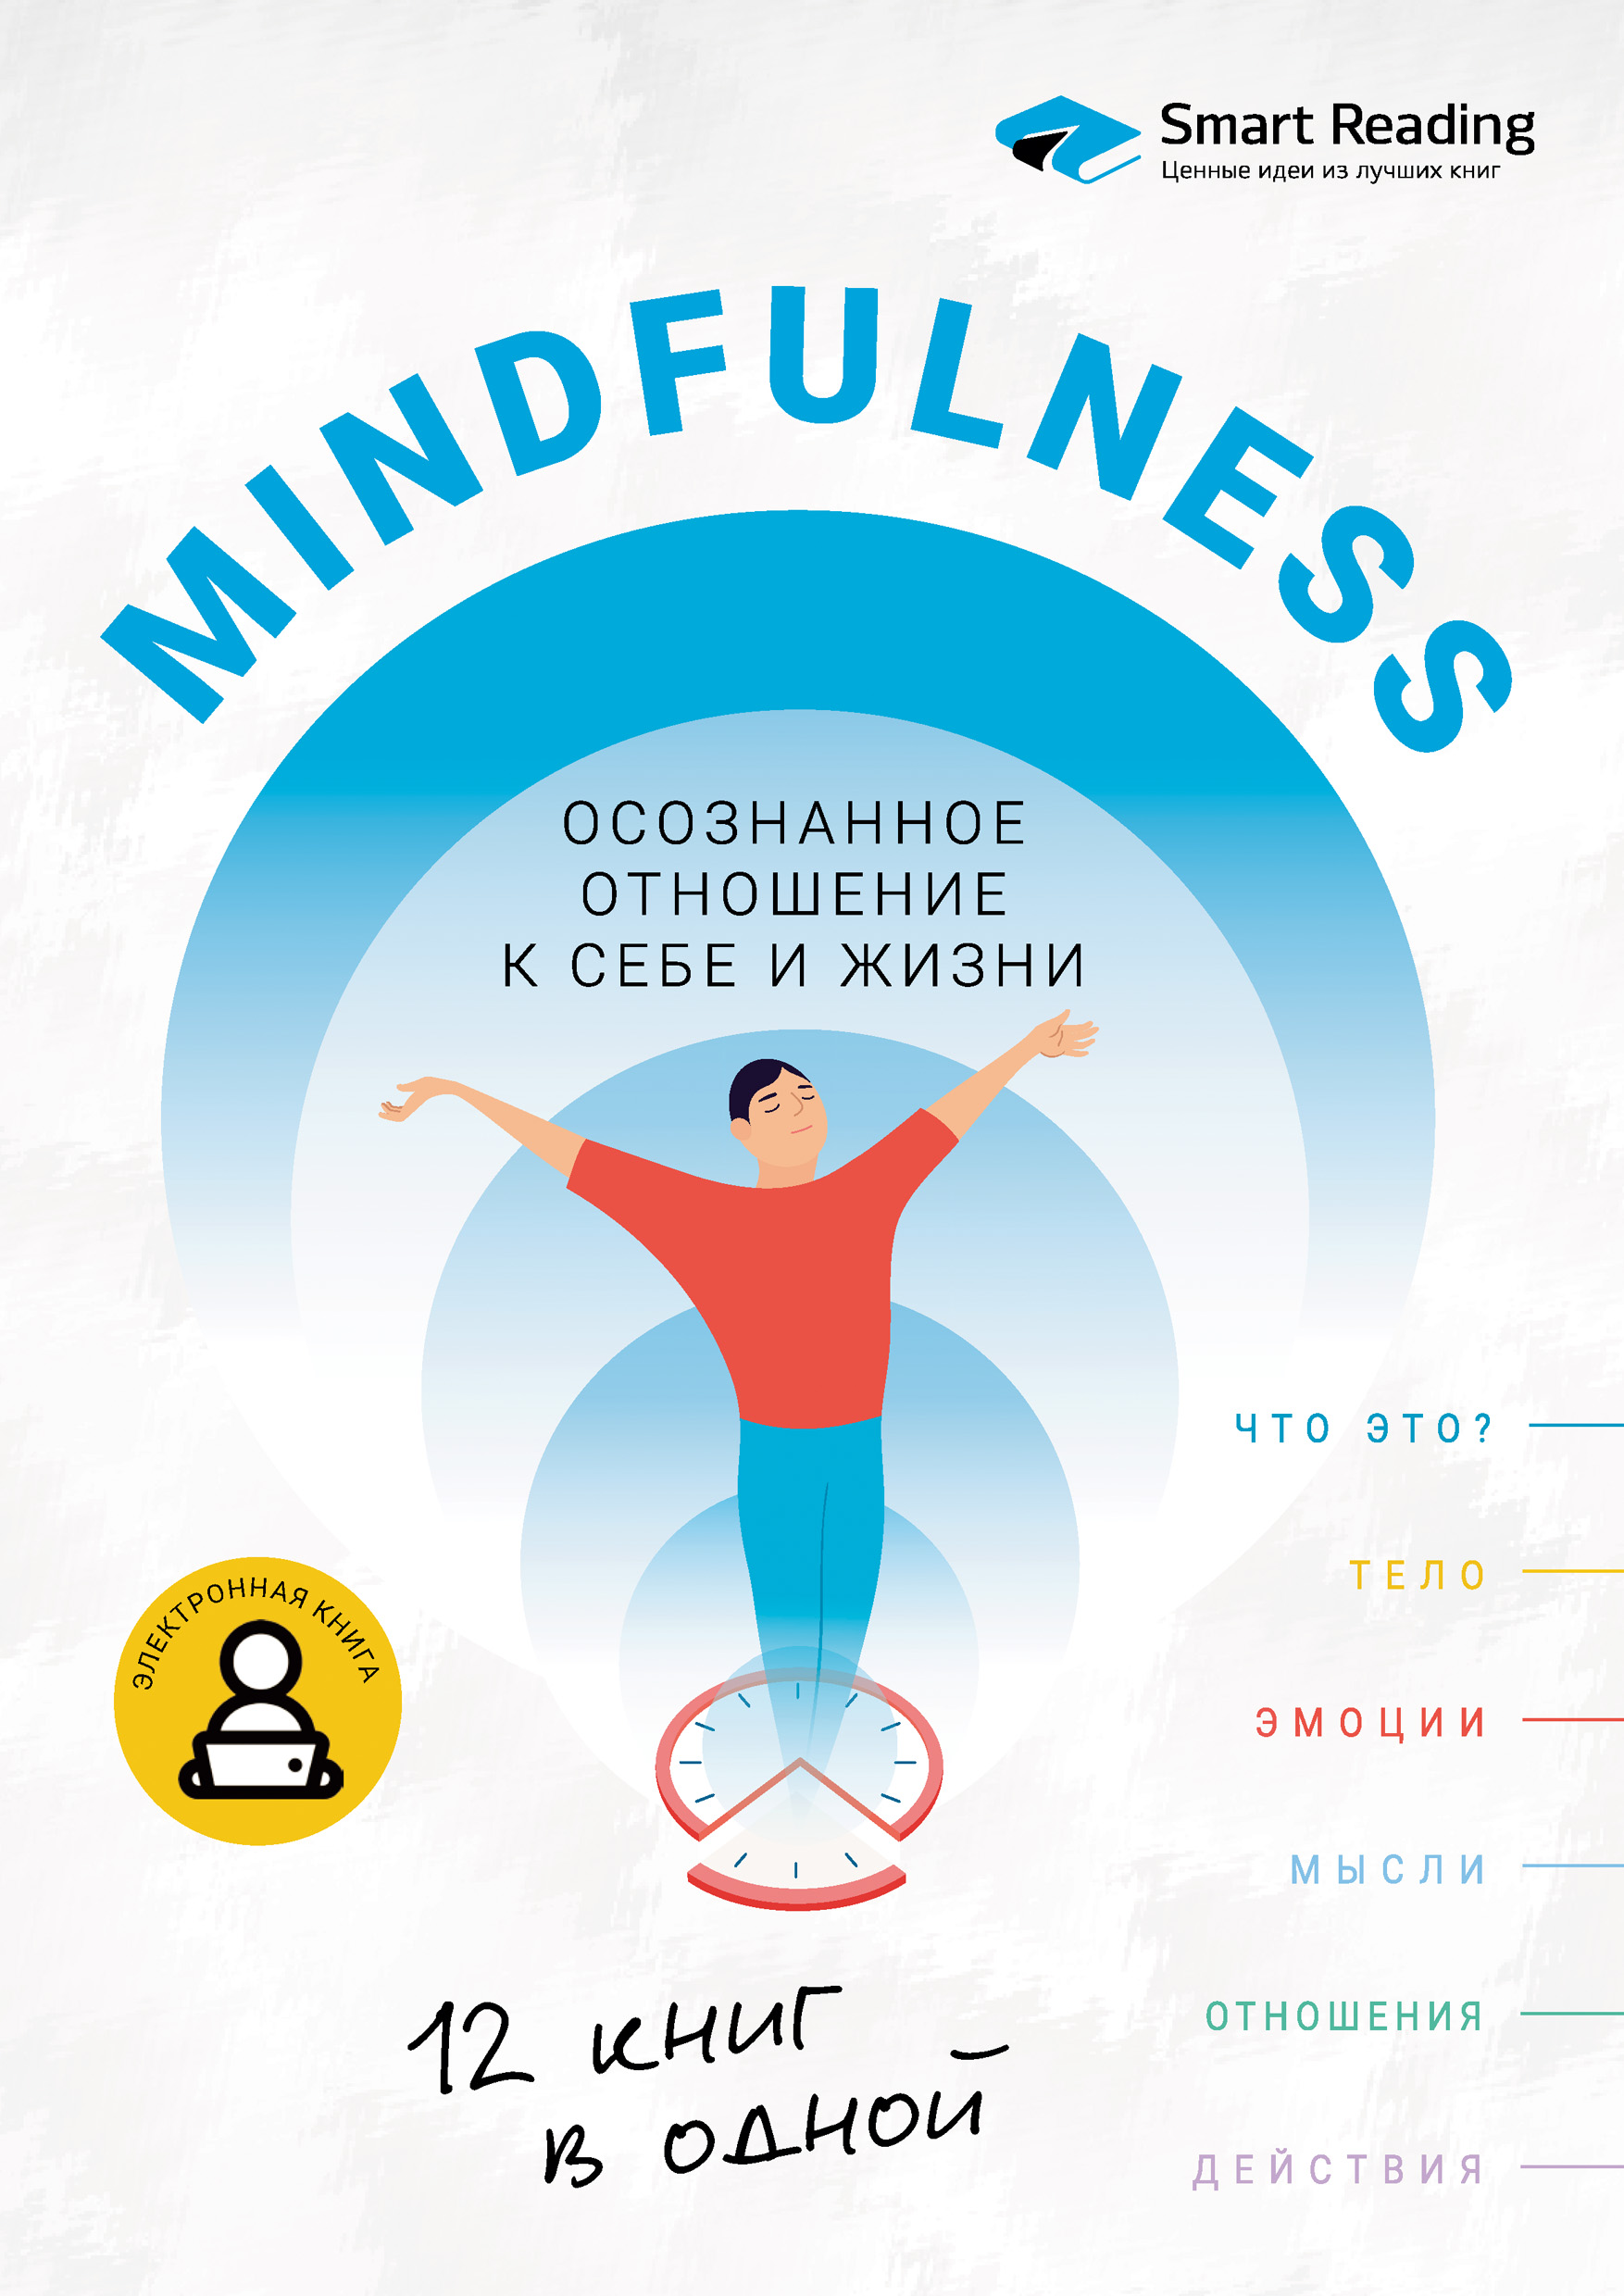 Осознанность. Mindfulness: визуальный гид по развитию осознанности и медитации на основе 12 бестселлеров